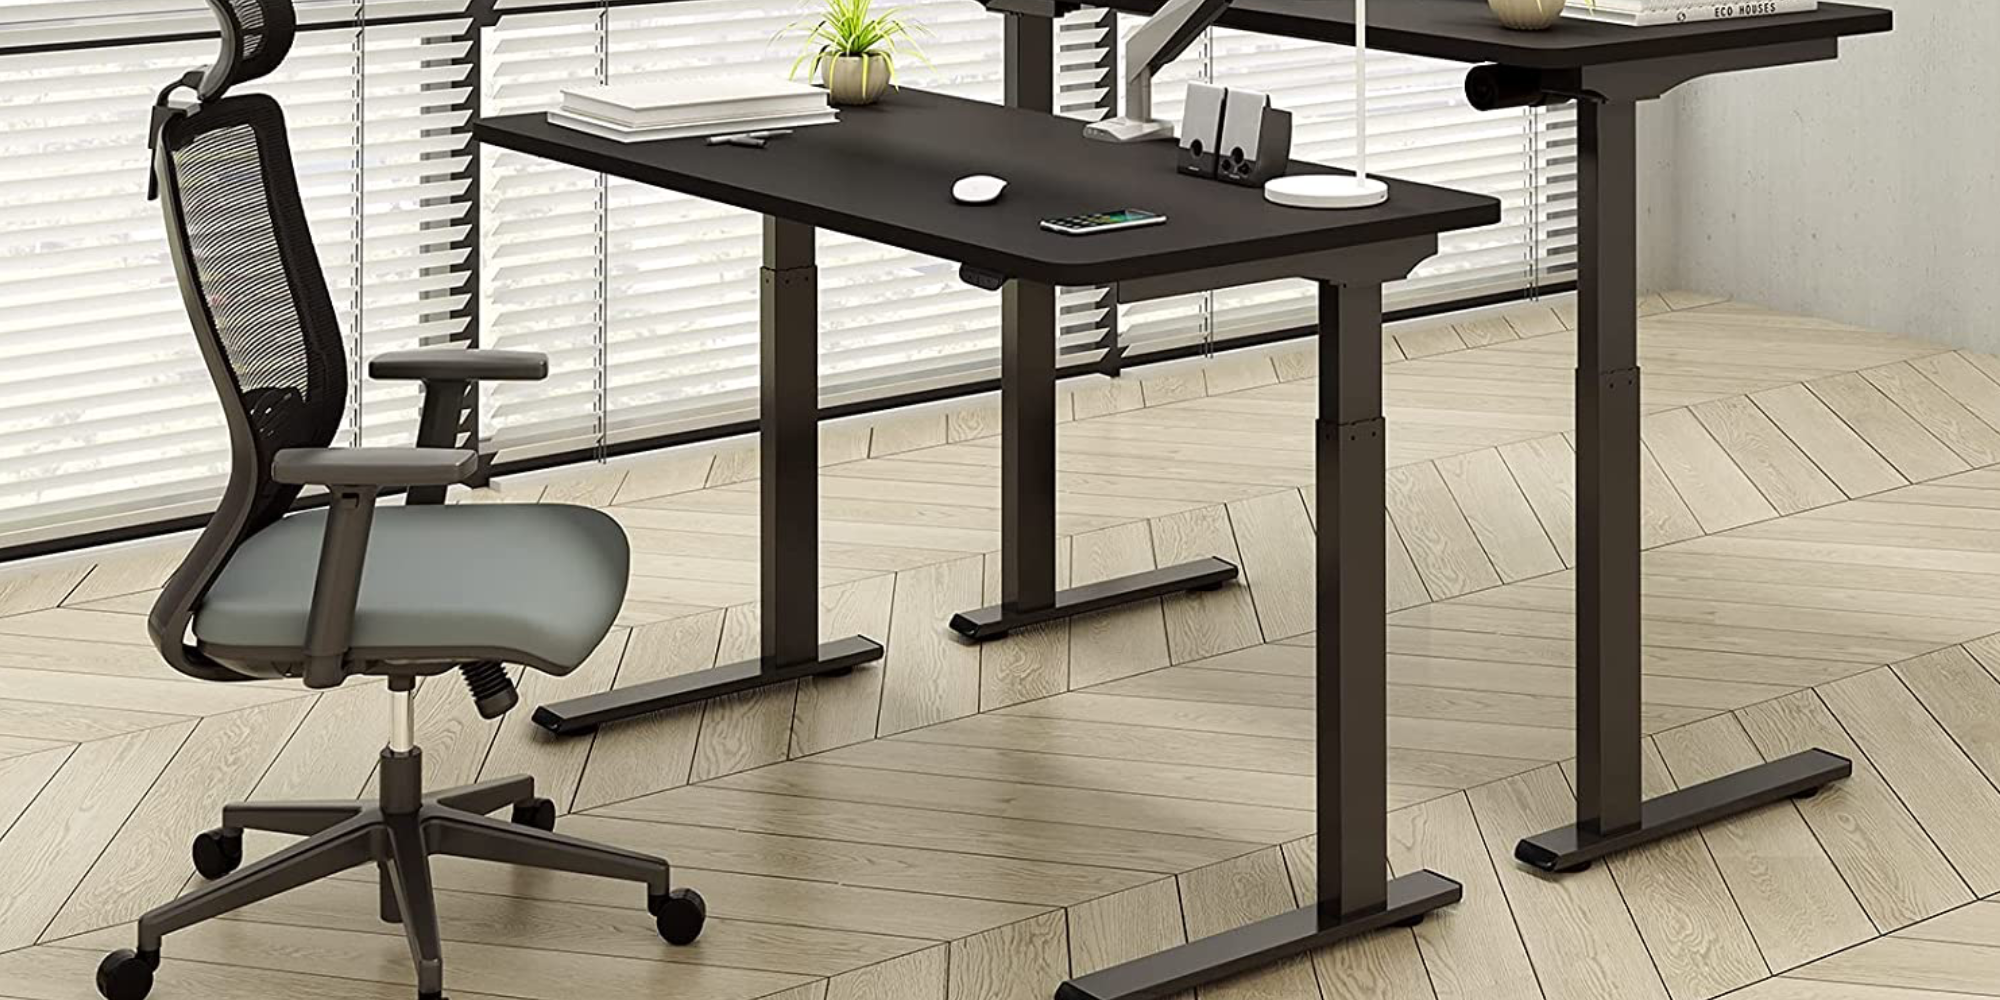 Electric Standing Desk Flexispot Tăng Năng Suất Của Bạn Với Một Chiếc Bàn Điều Chỉnh Độ Cao